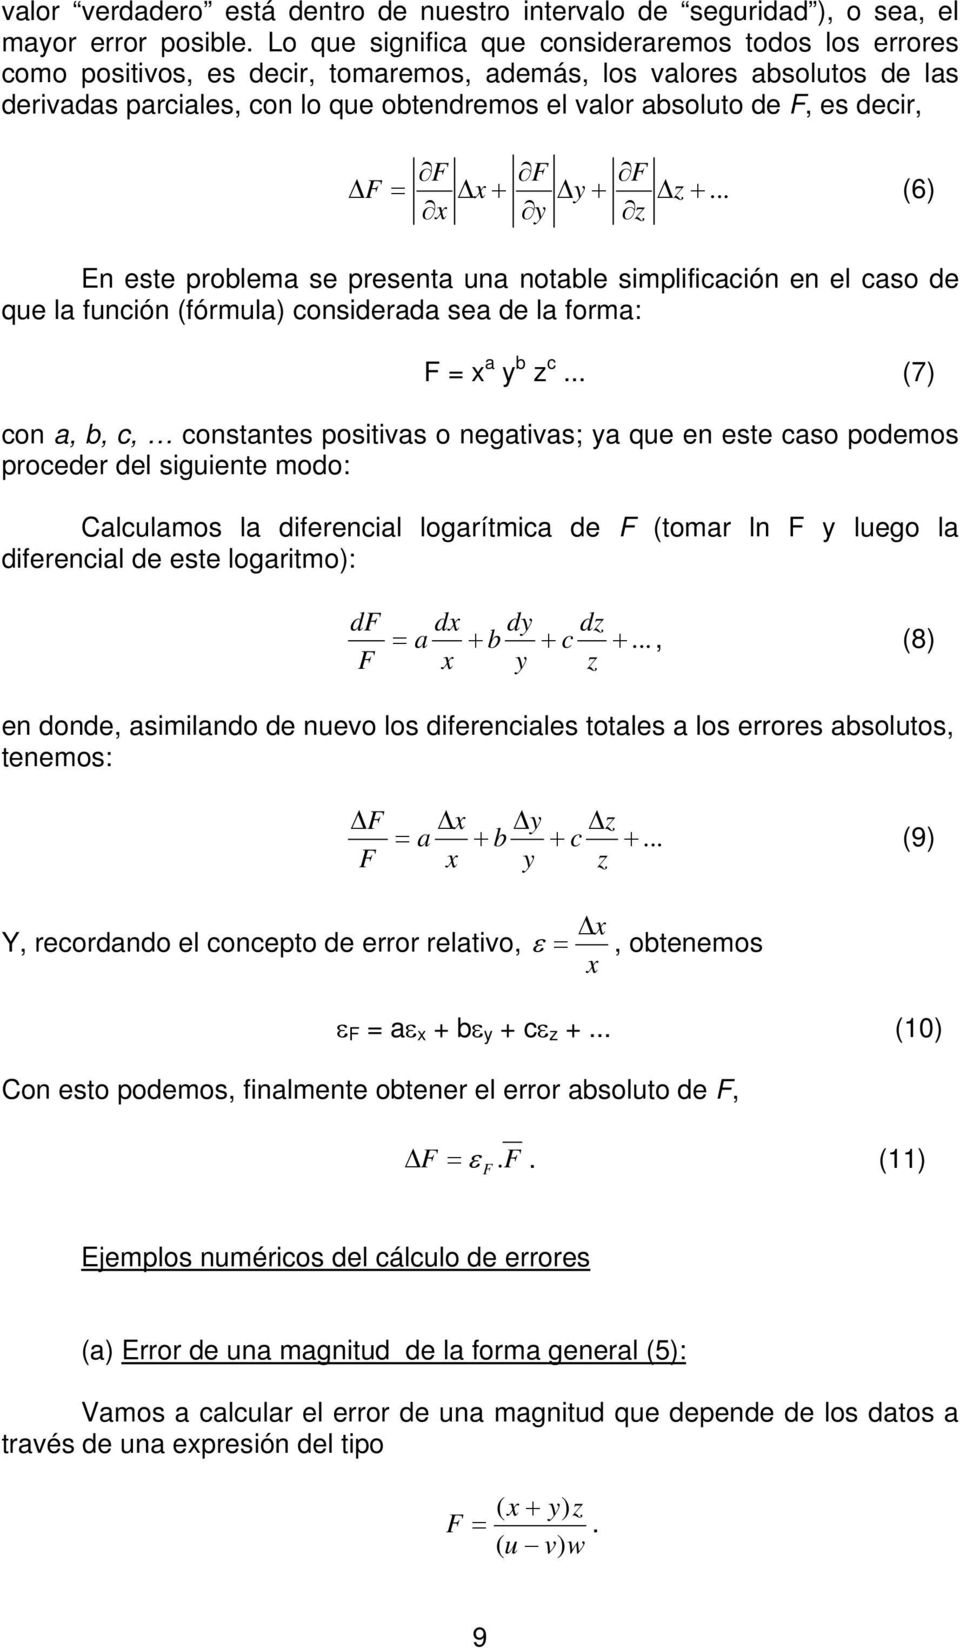 .. 6 En este problema se presenta una notable smplfcacón en el caso de que la funcón fórmula consderada sea de la forma: a b c.